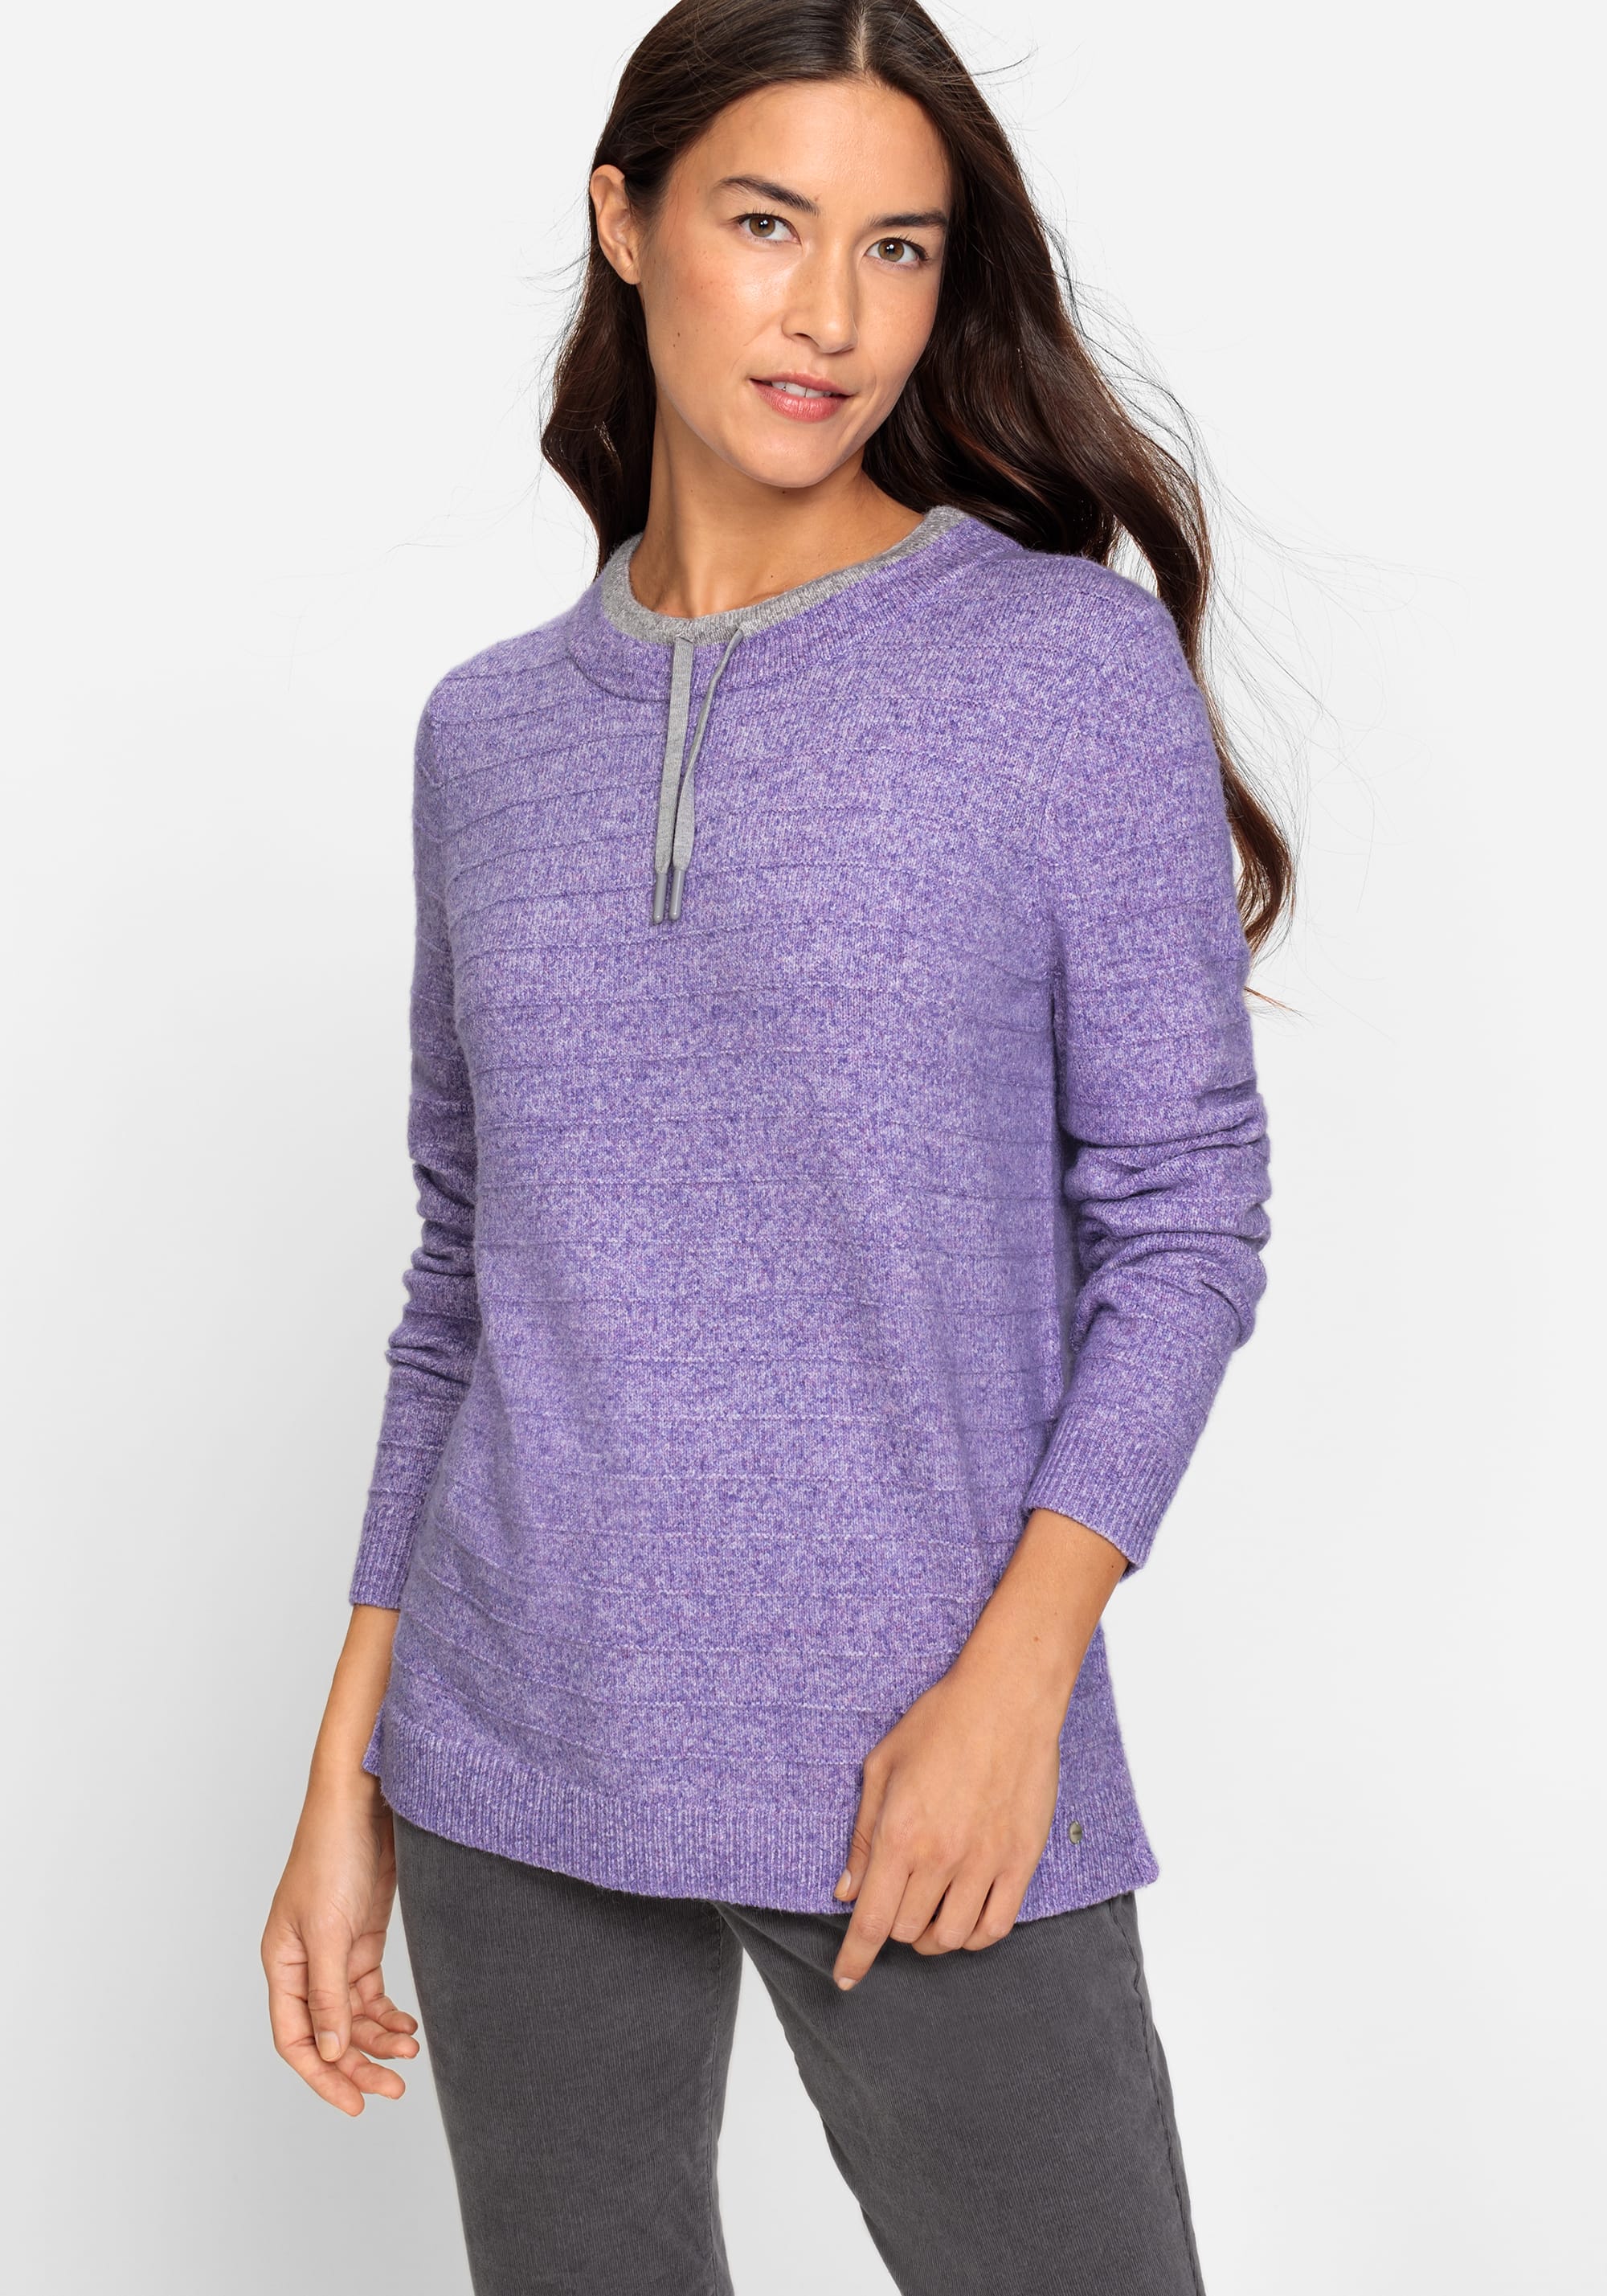 Knit Sweater - Gray melange - Ladies